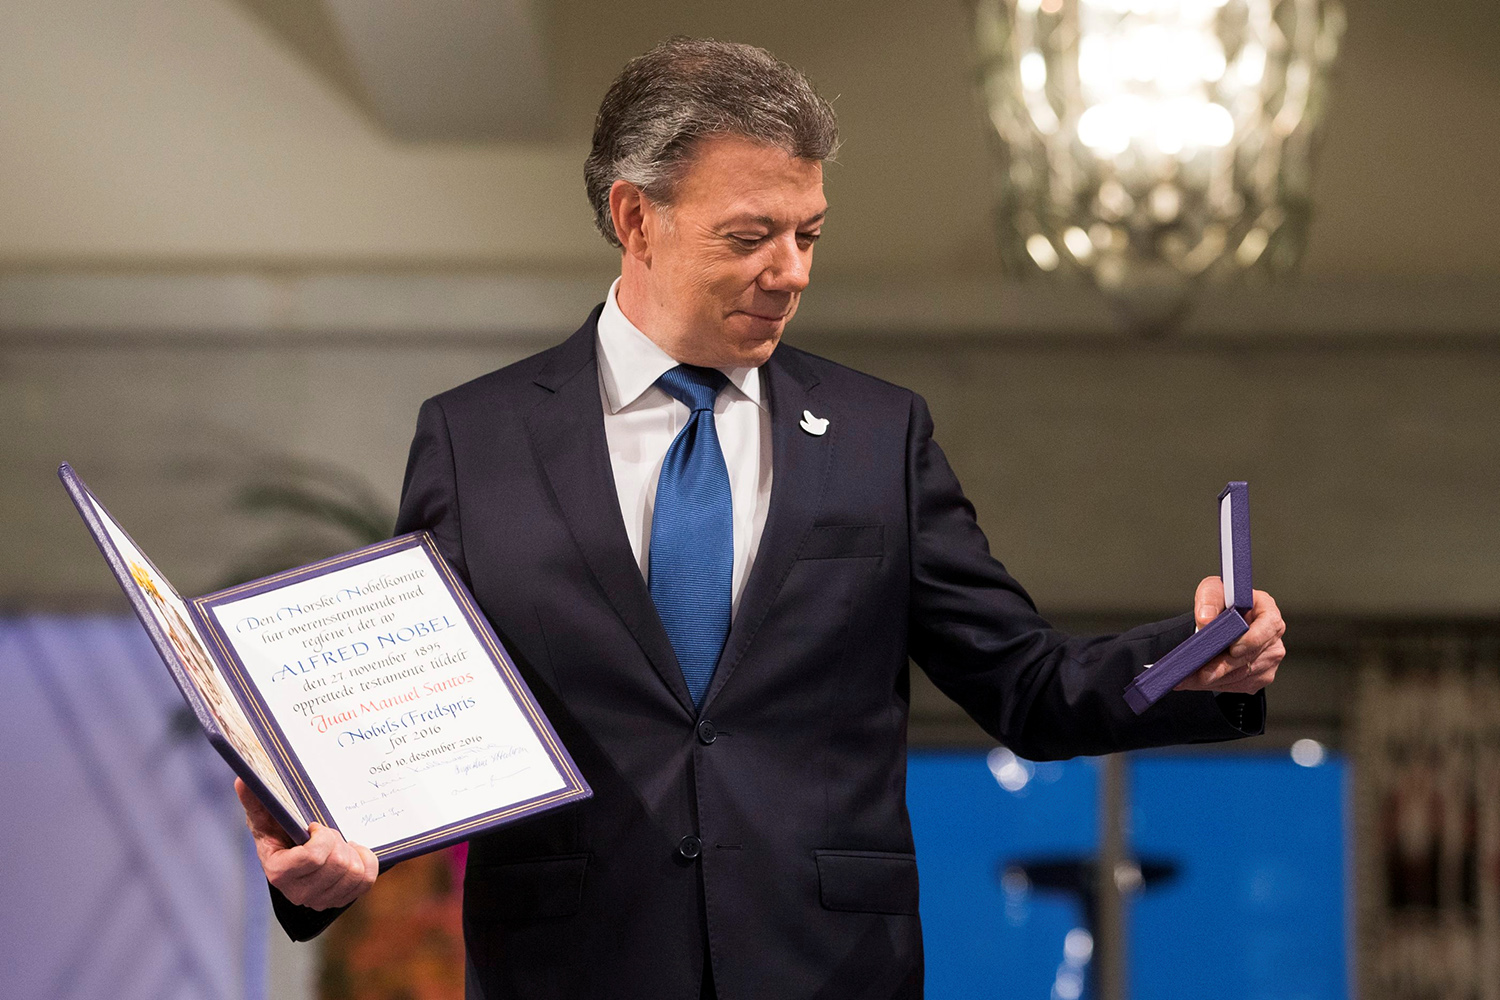 Juan Manuel Santos, el impulso a la paz en Colombia